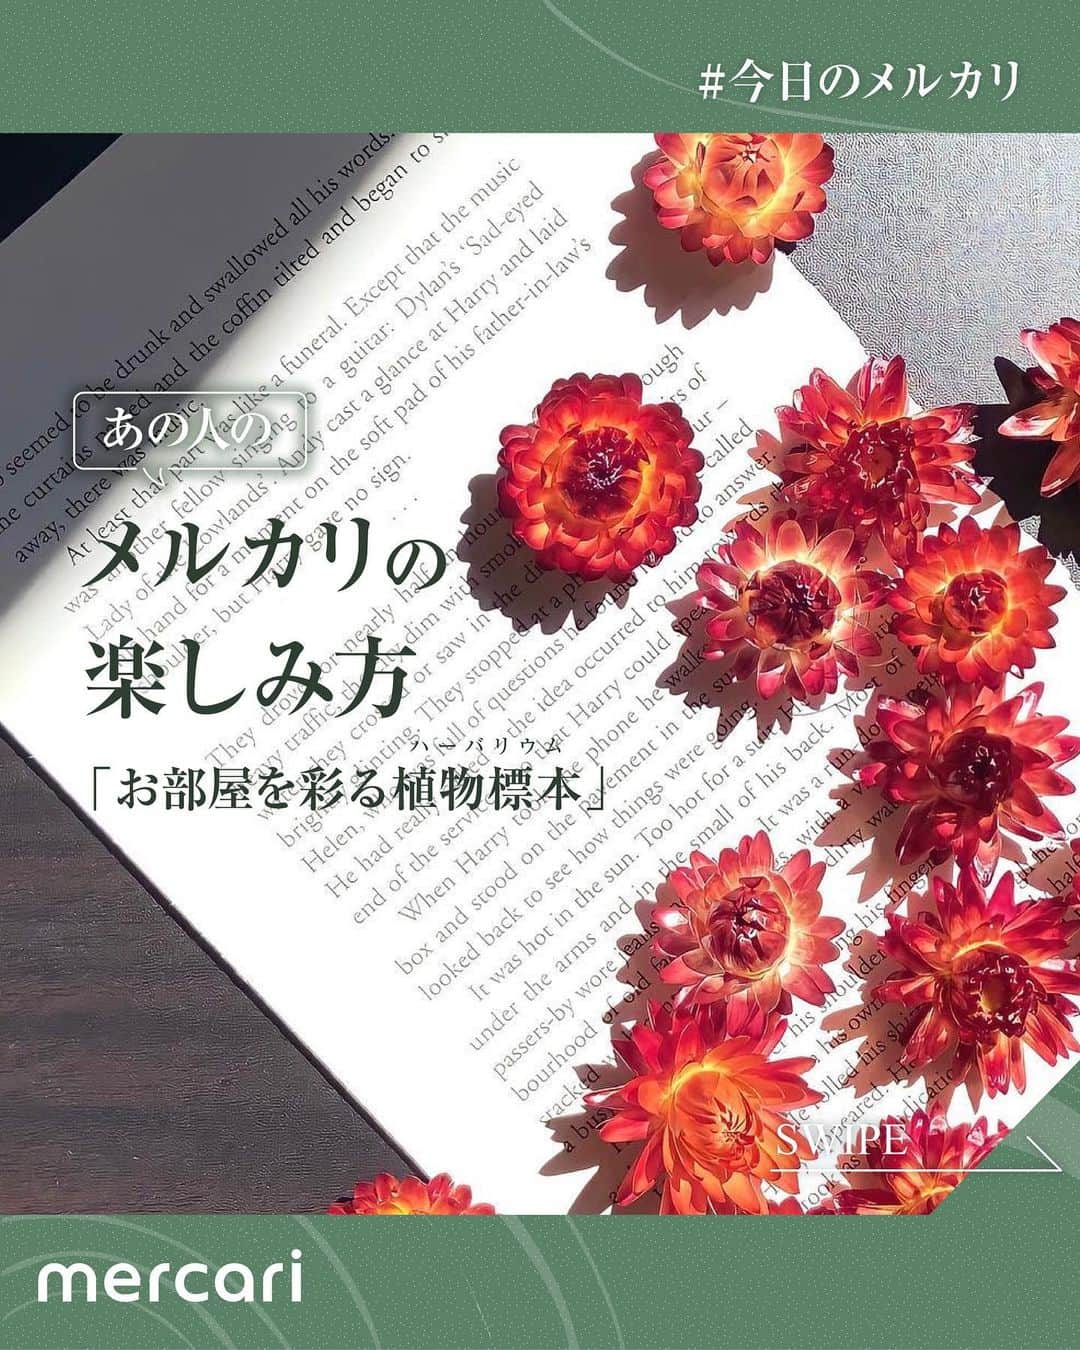 mercari_jpのインスタグラム：「＼ あの人のメルカリの楽しみ方 ／ テーマ「お部屋を彩る植物標本」  この投稿では、ひとりのメルカリ利用者さんに焦点を当てて メルカリの楽しみ方を素敵な写真とともにご紹介します✨  今回ご紹介するのは アンティークを基調にした手作りハーバリウムを メルカリで販売されている @____m.i.s____さん🌿  メルカリの楽しみ方についての新たな発見や 日々の暮らしにちょっとした変化が生まれる そんなきっかけになれば嬉しいです。  メルカリでは他にもたくさんのアイテムが出品されています💐 ぜひメルカリアプリもチェックしてみてください◎  次回もお楽しみに♪  -------------------- #メルカリ #メルカリ出品 #メルカリ販売 #メルカリ活用 #メルカリ活用術 #メルカリ初心者 #メルカリデビュー #メルカリはじめました #フリマアプリ #出品 #フリマ #ハーバリウム #植物標本 #ハーバリウム作り #ハーバリウムのある暮らし #植物生活 #緑のある暮らし #ハンドメイド #クリスマス雑貨 #クリスマスインテリア #冬の贈り物 #幻想的な世界 #おしゃれ雑貨 #ドライフラワーのある生活」